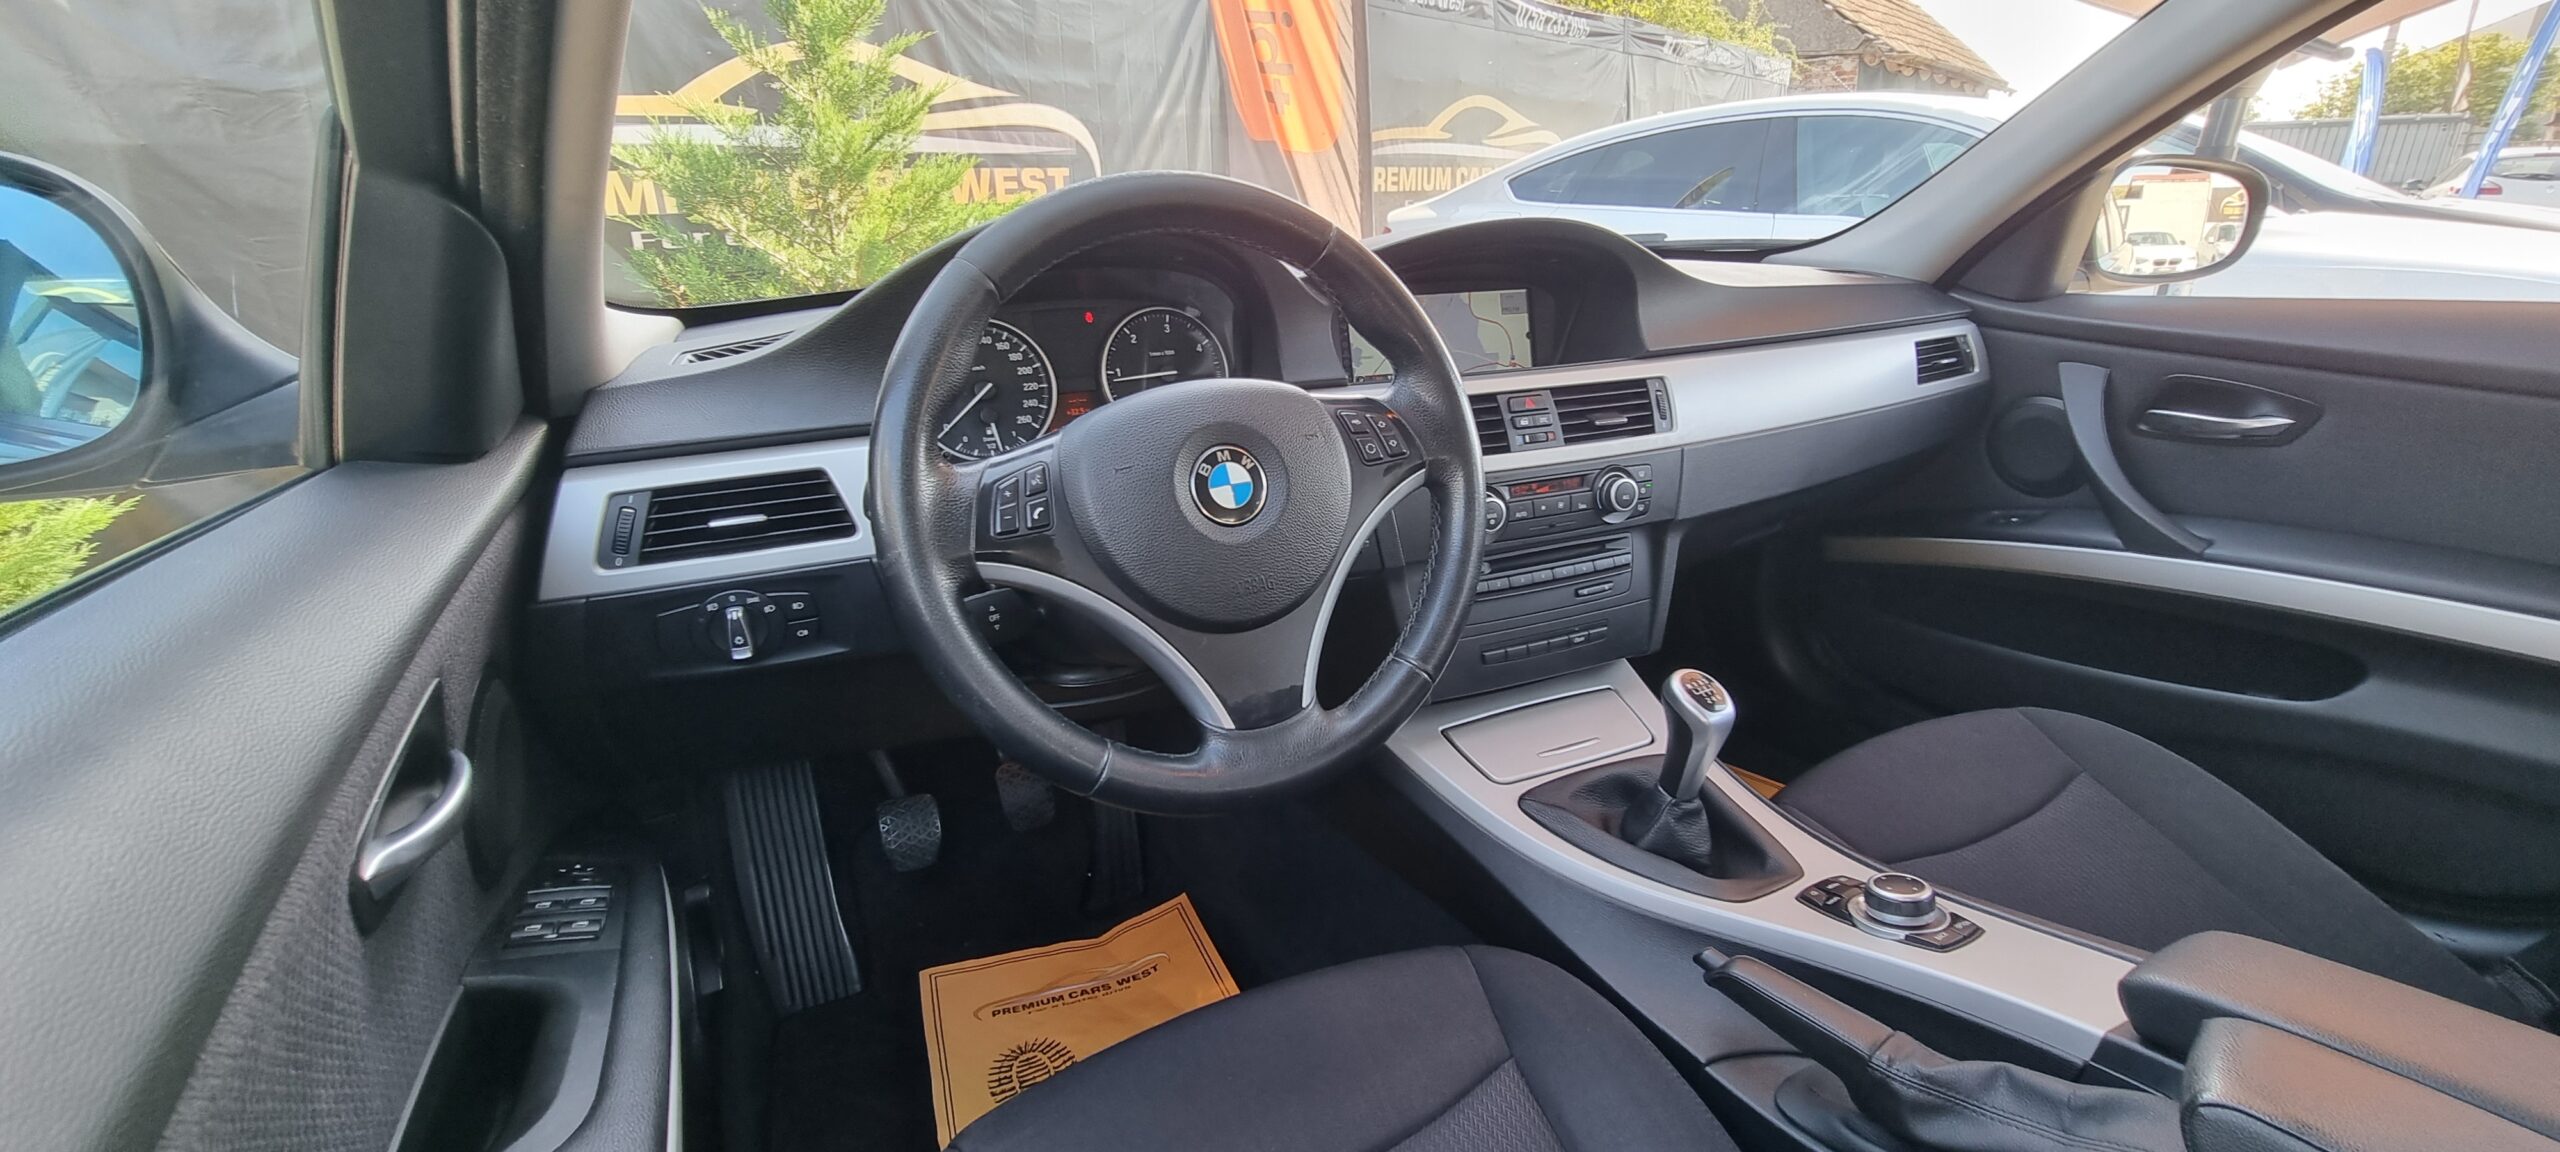 BMW SERIA 3, 2.0 DIESEL, 177 CP, EURO 5, AN 2009